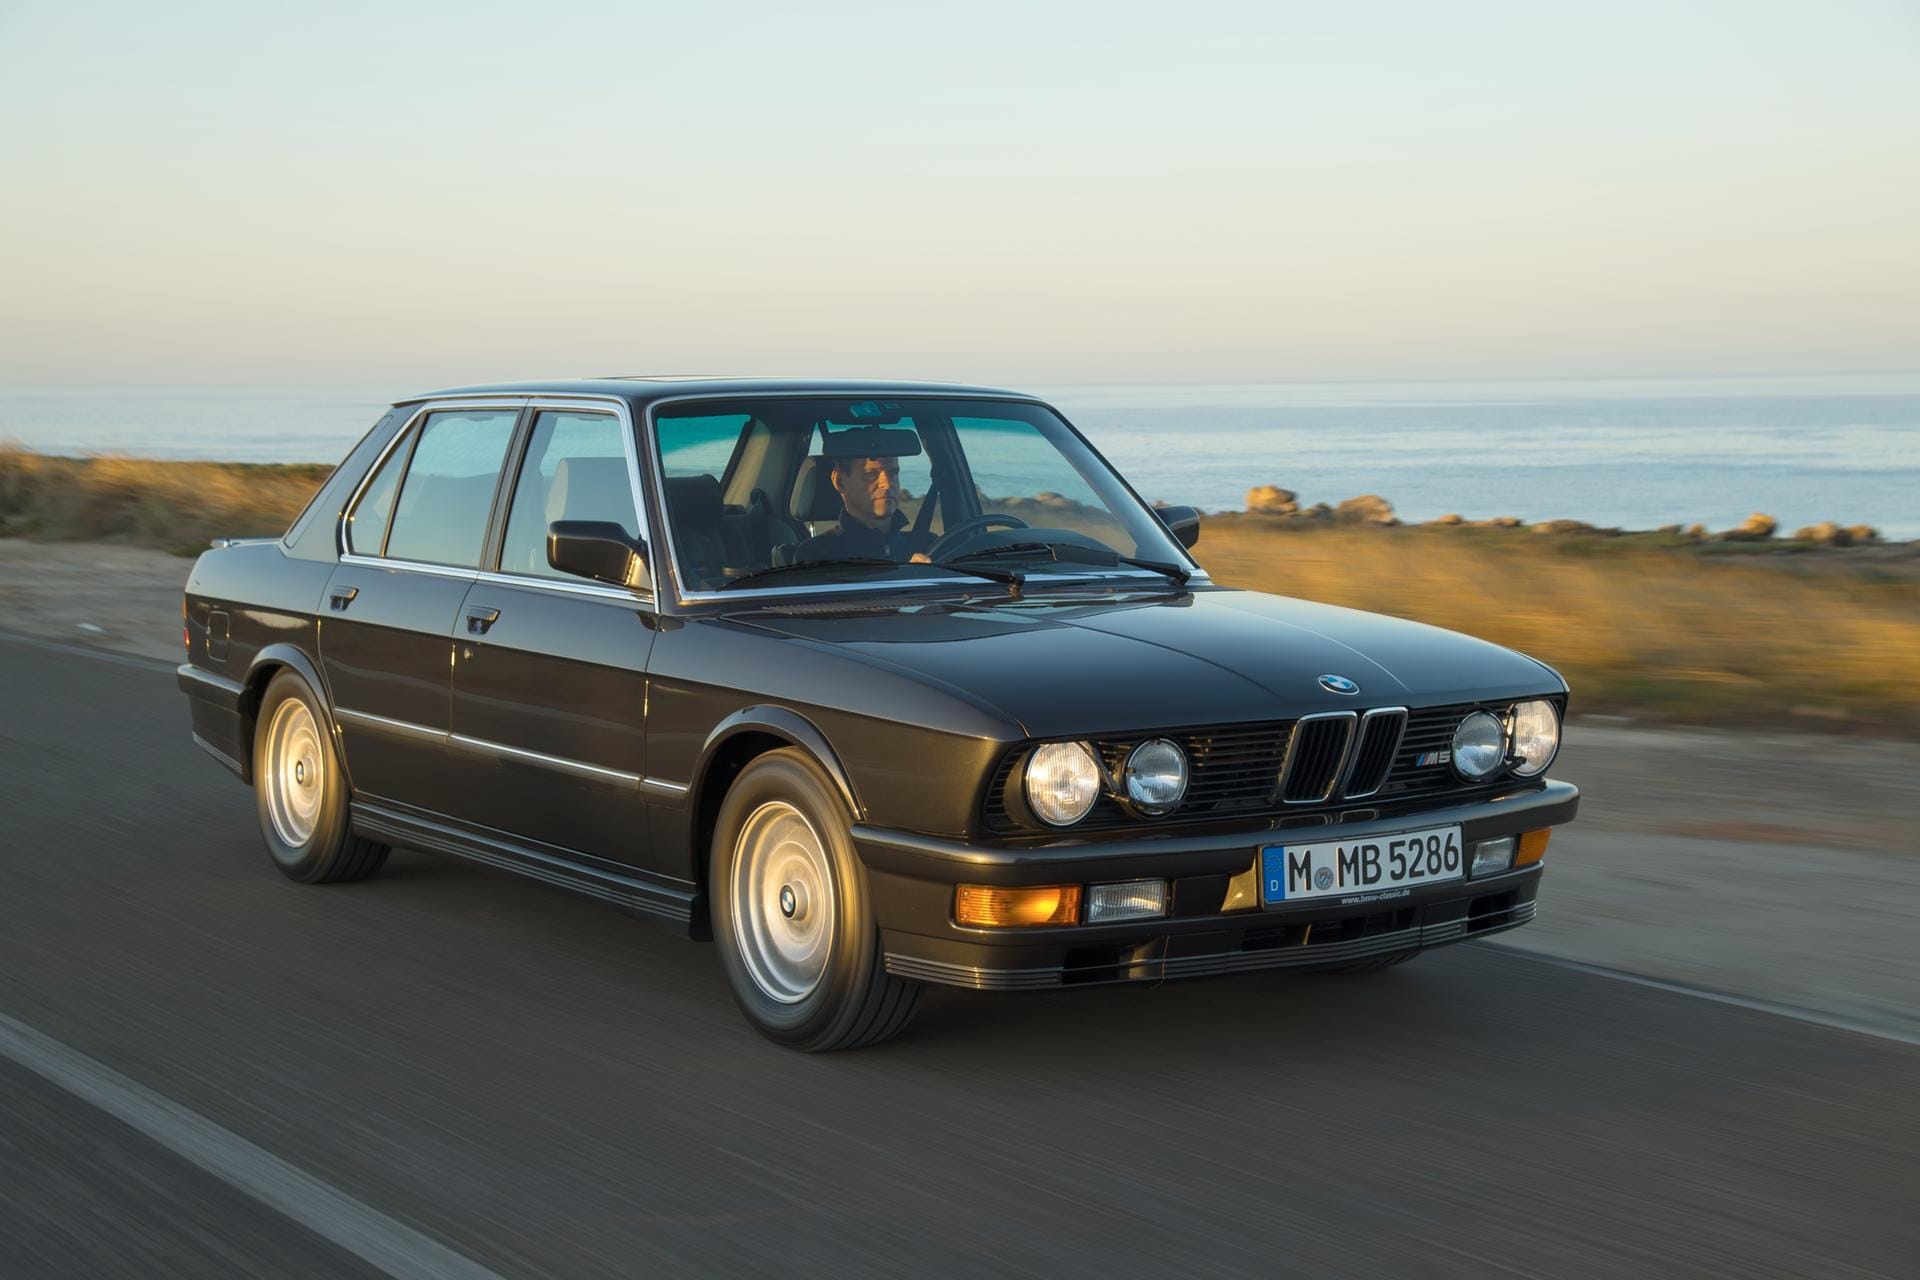 Begehrter Klassiker: Dennoch halten Fans und Sammler den BMW M5 preislich noch für unterbewertet.